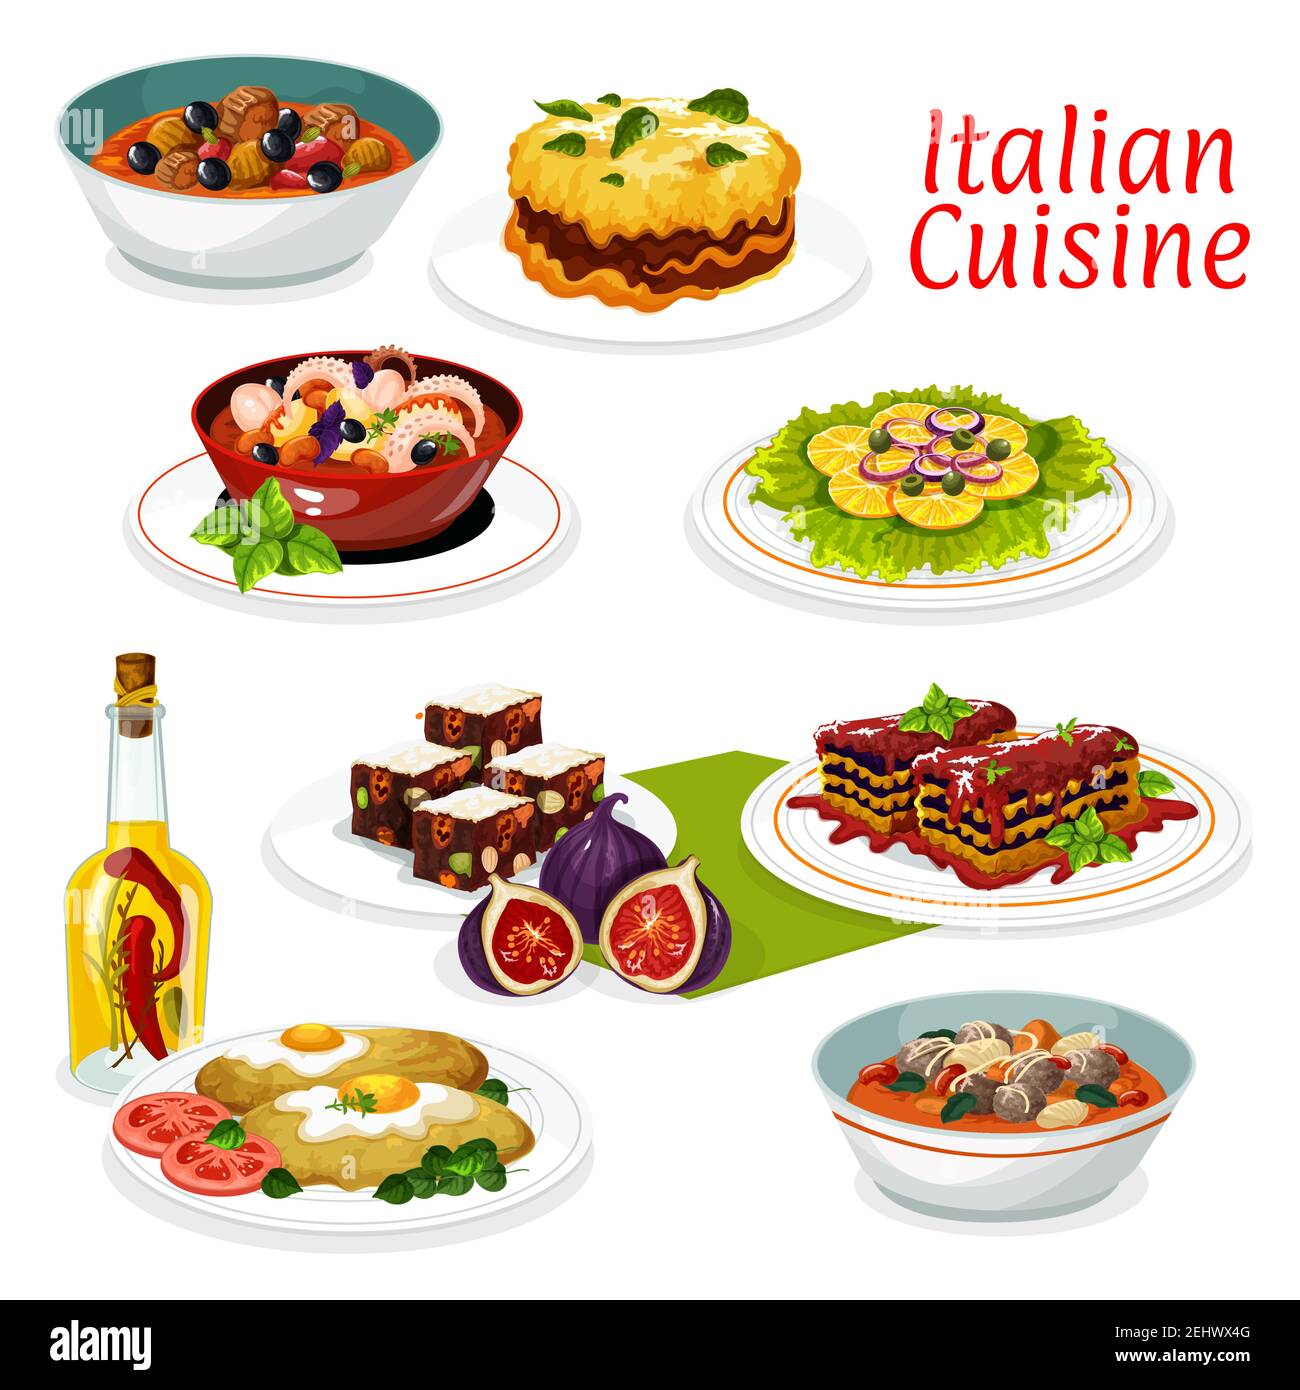 Italienische Küche Hauptgerichte von Fleisch und Gemüse, Lasagne mit Käse und Tomatensauce, Rindfleisch Oliven Eintopf und Meeresfrüchte Oktopus Salat. Vektor türkei mil Stock Vektor